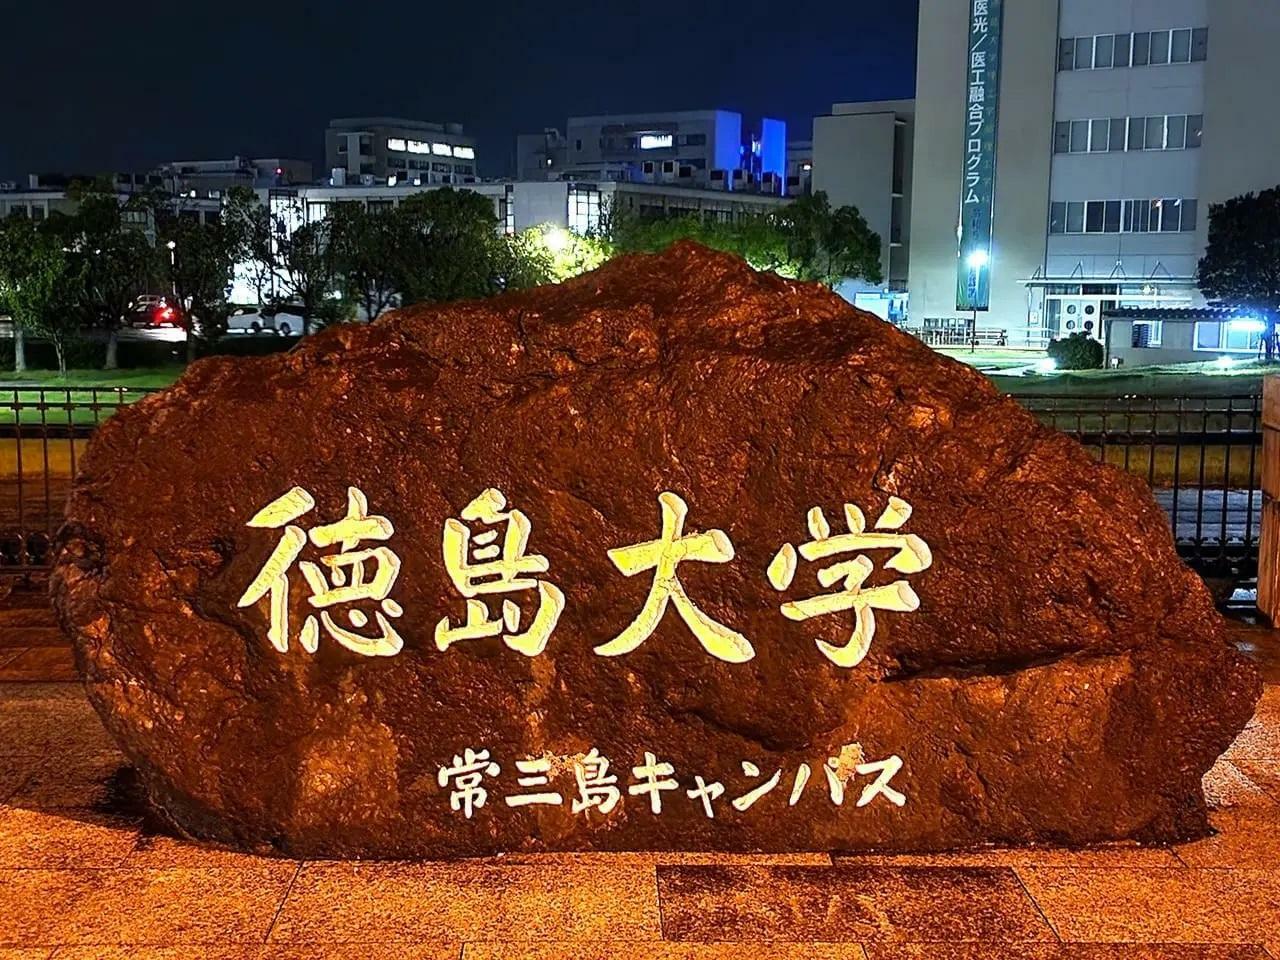 「徳島大学 常三島キャンパス」の石。